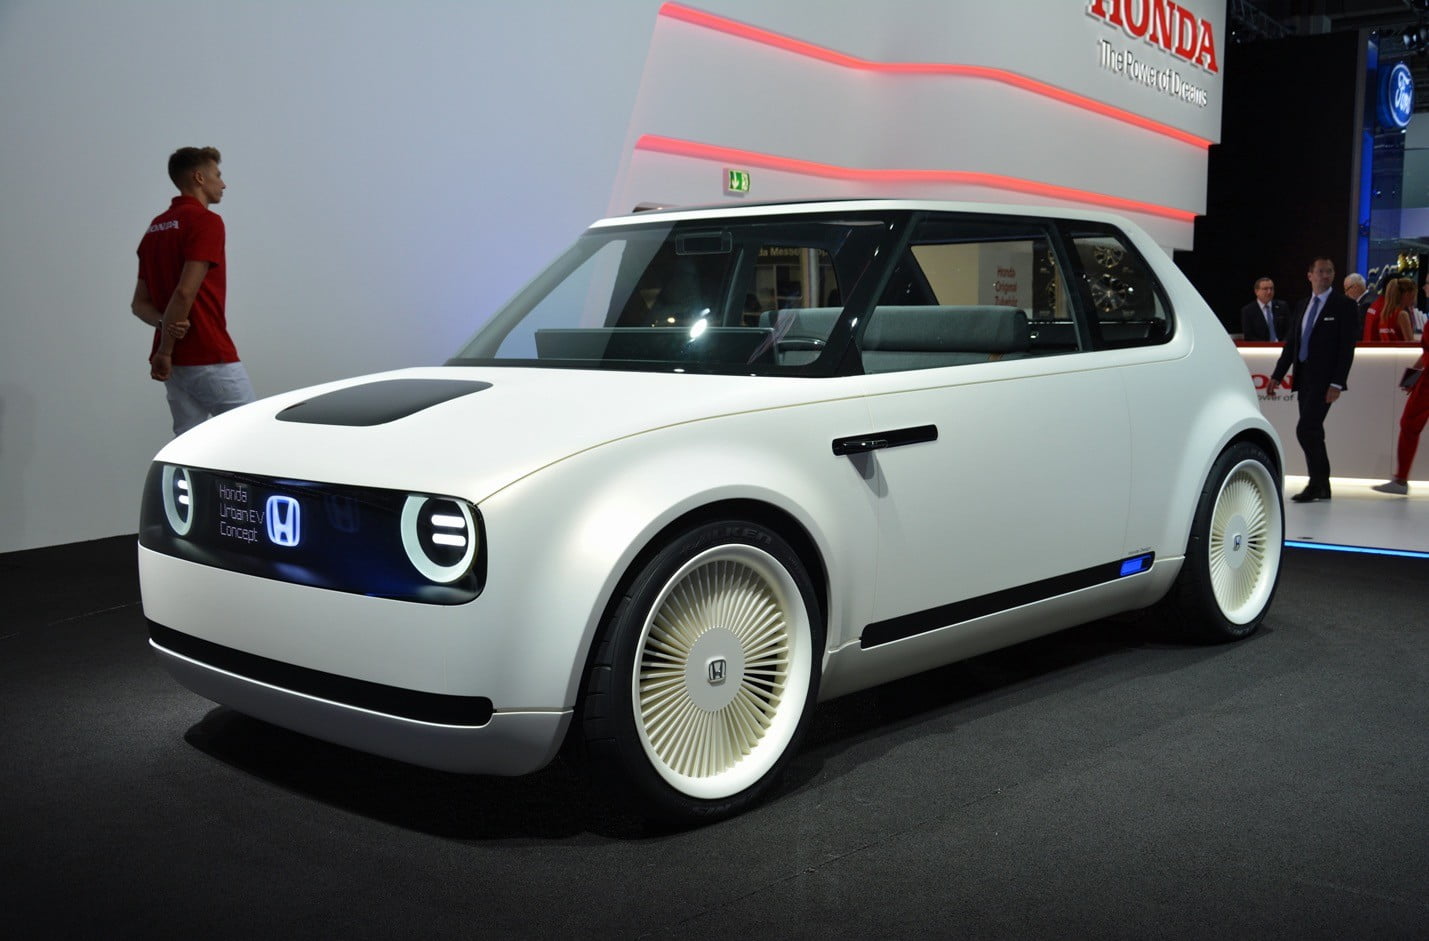 Honda'nın küçük elektrikli otomobili Urban EV ilk kez görüntülendi